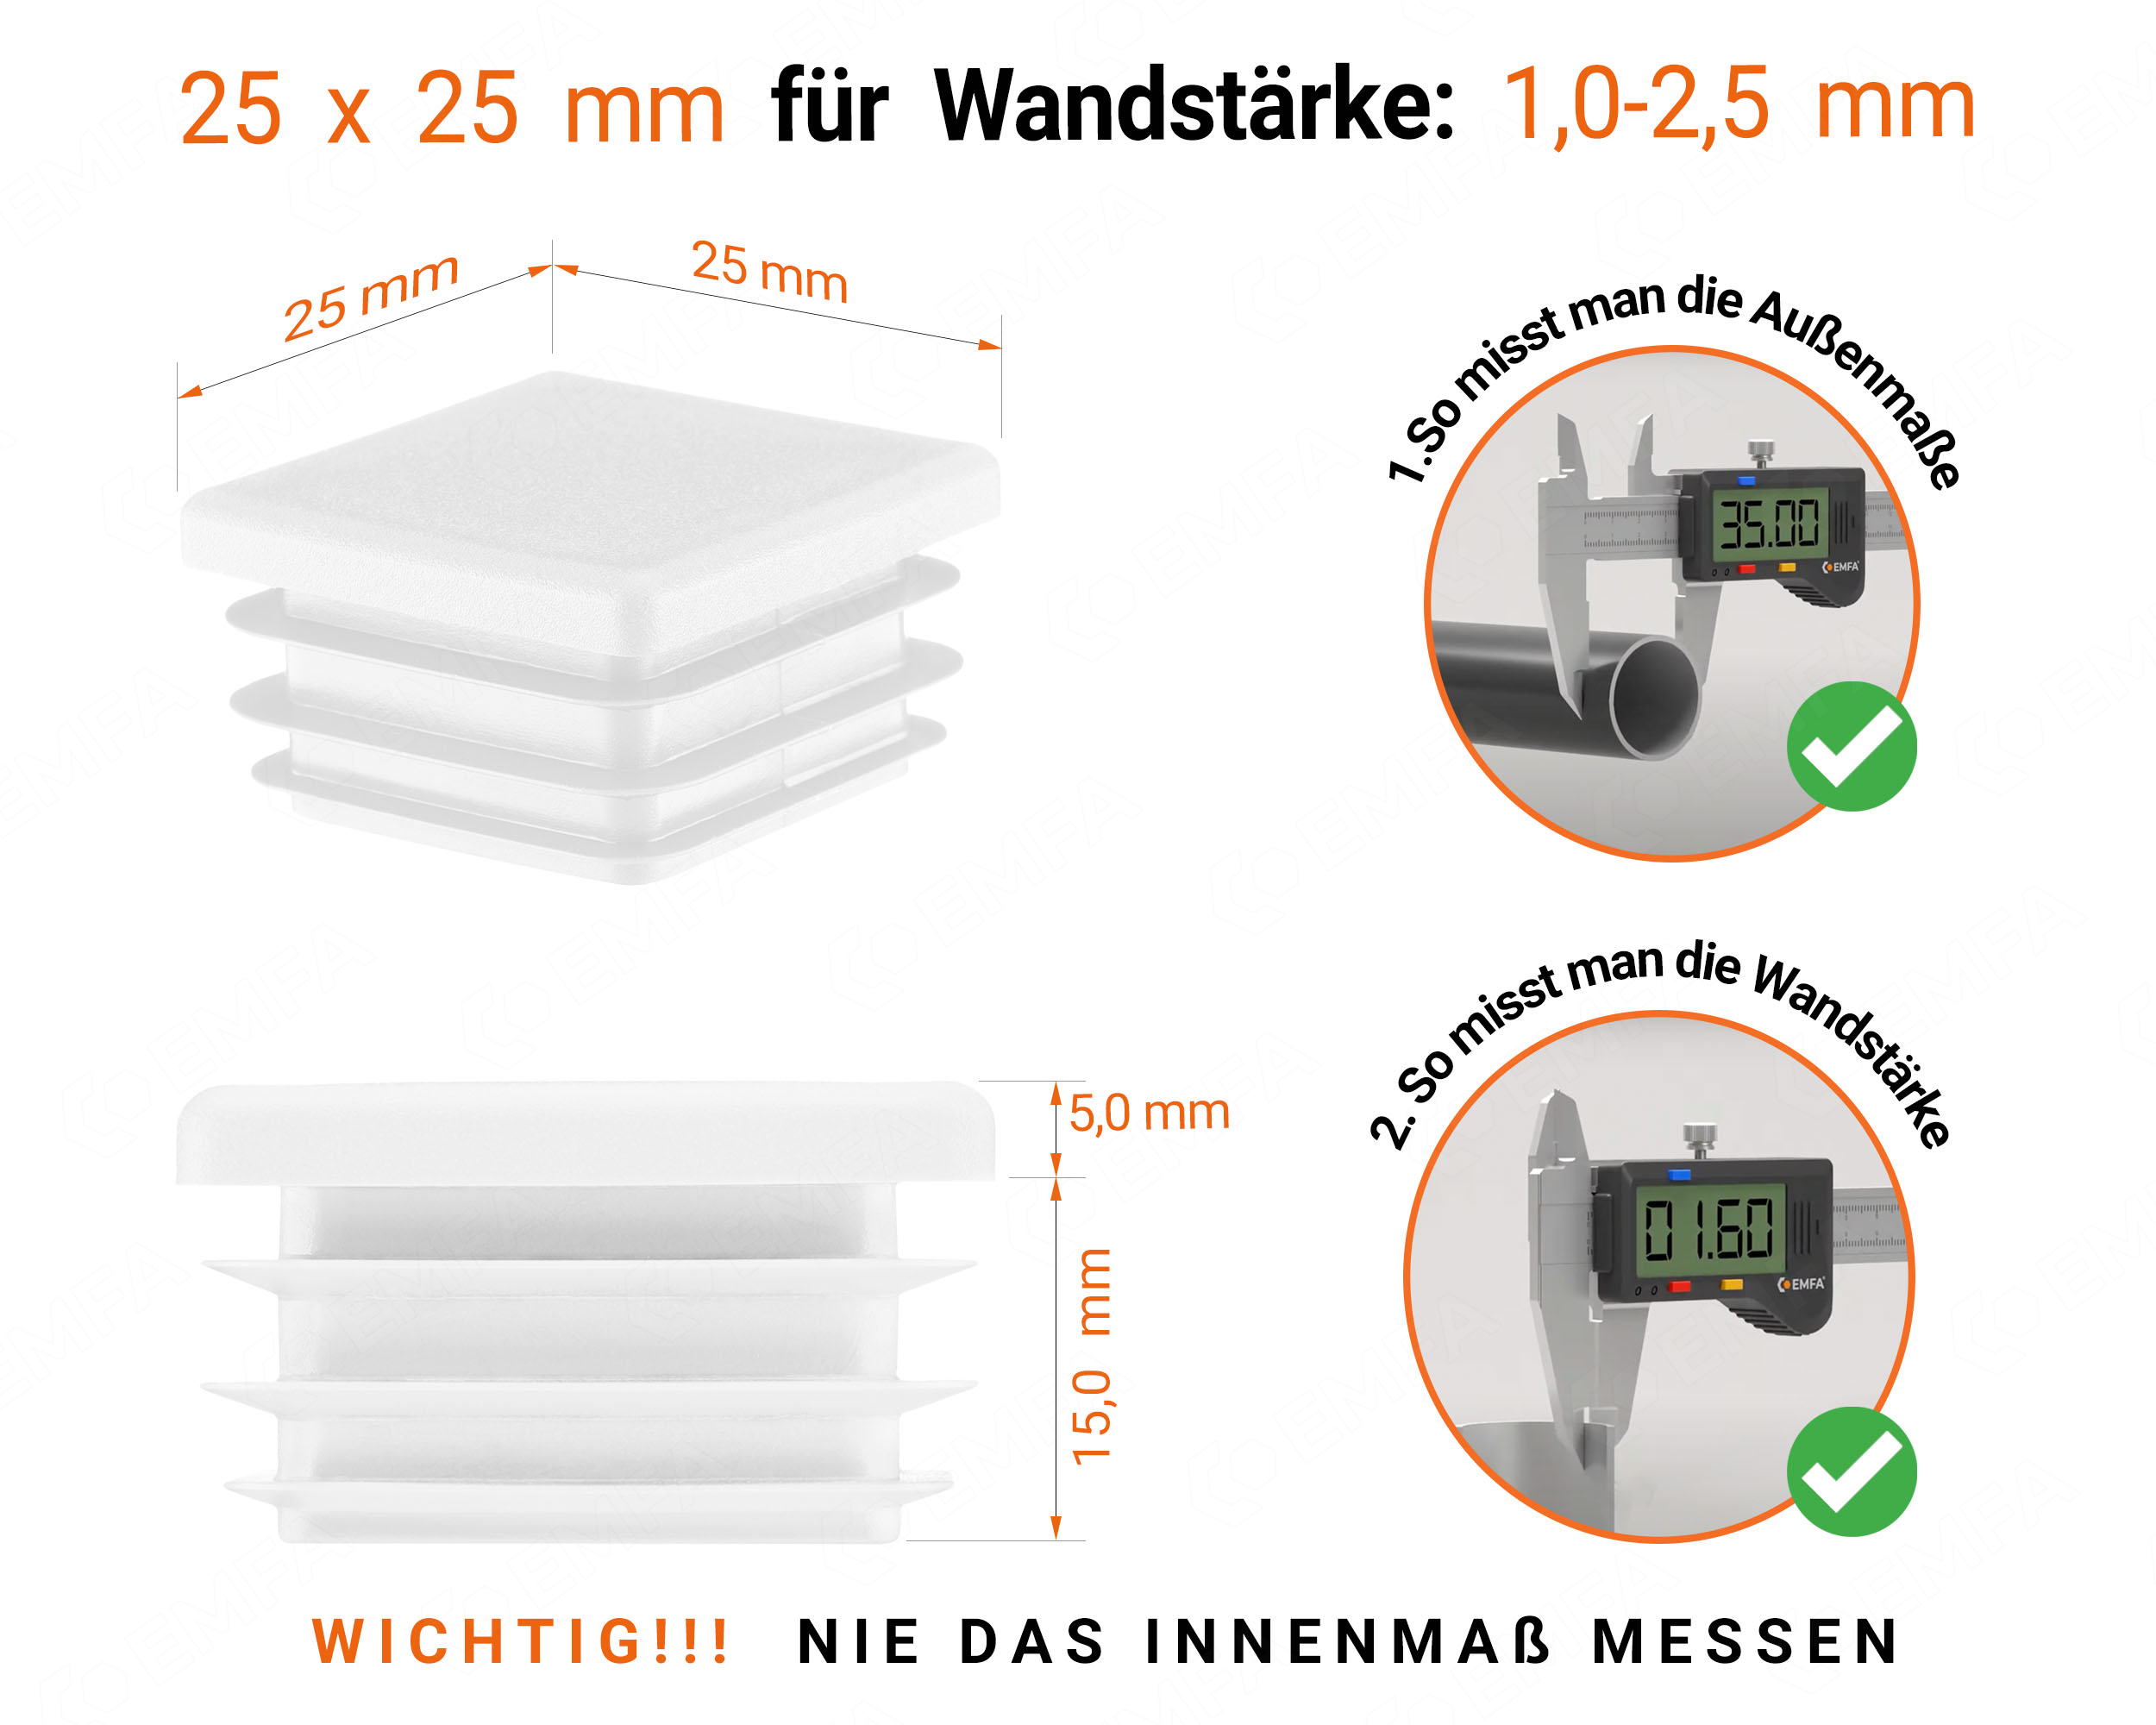 Weiße Endkappe für Vierkantrohre in der Größe 25x25 mm mit technischen Abmessungen und Anleitung für korrekte Messung